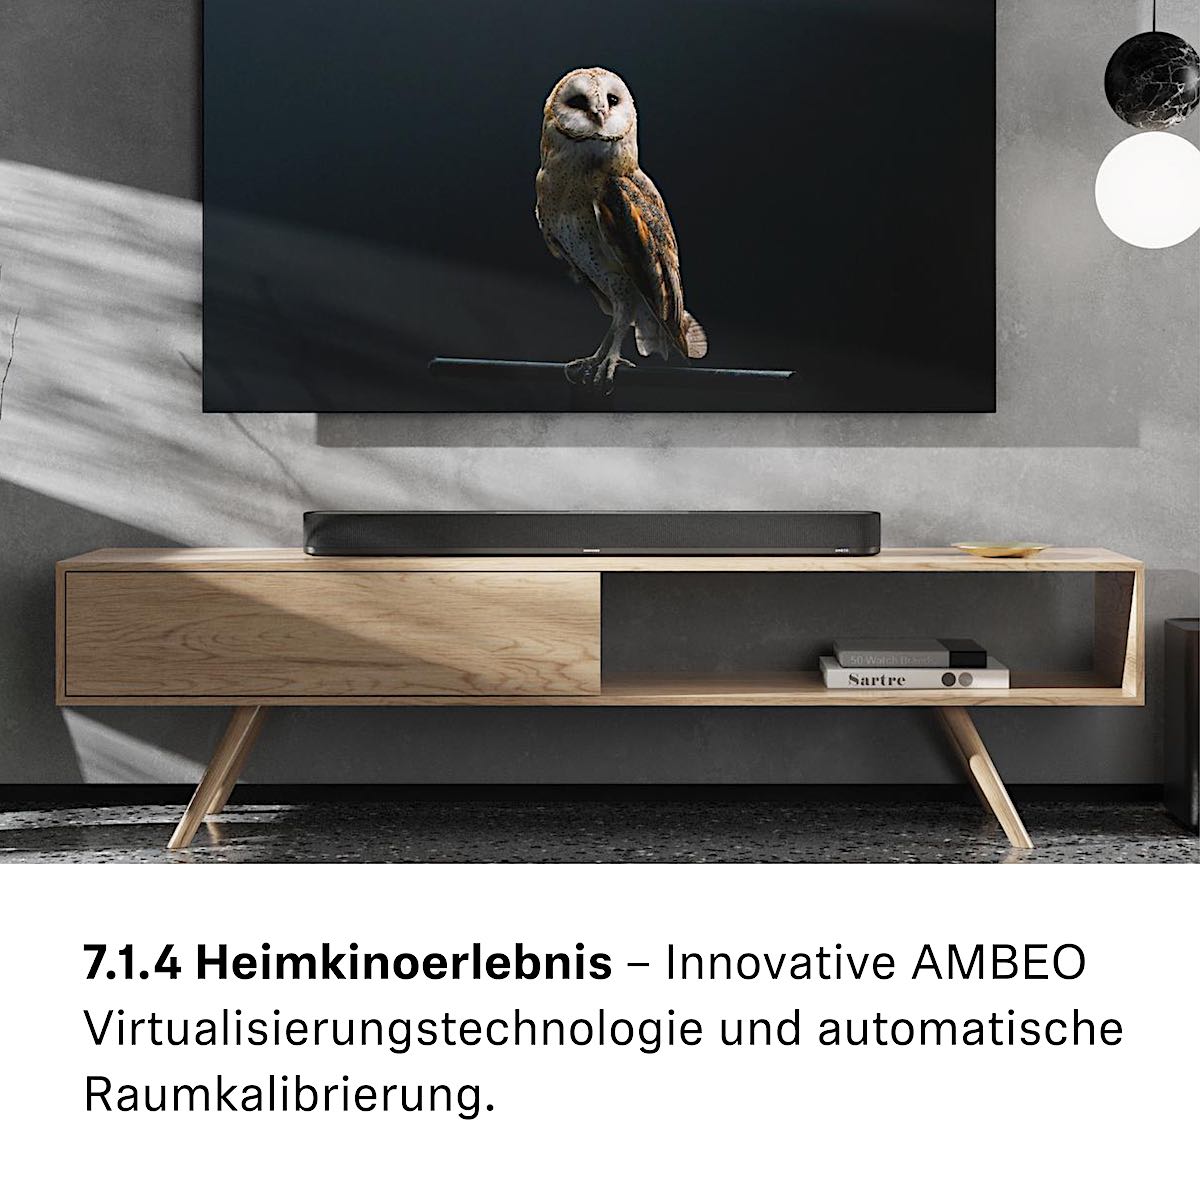 AMBEO Virtualisierungstechnologie: Die hochmoderne Technologie, die gemeinsam mit dem Fraunhofer IIS-Institut entwickelt wurde, bildet ein komplettes 7.1.4 Heimkinosystem nach.